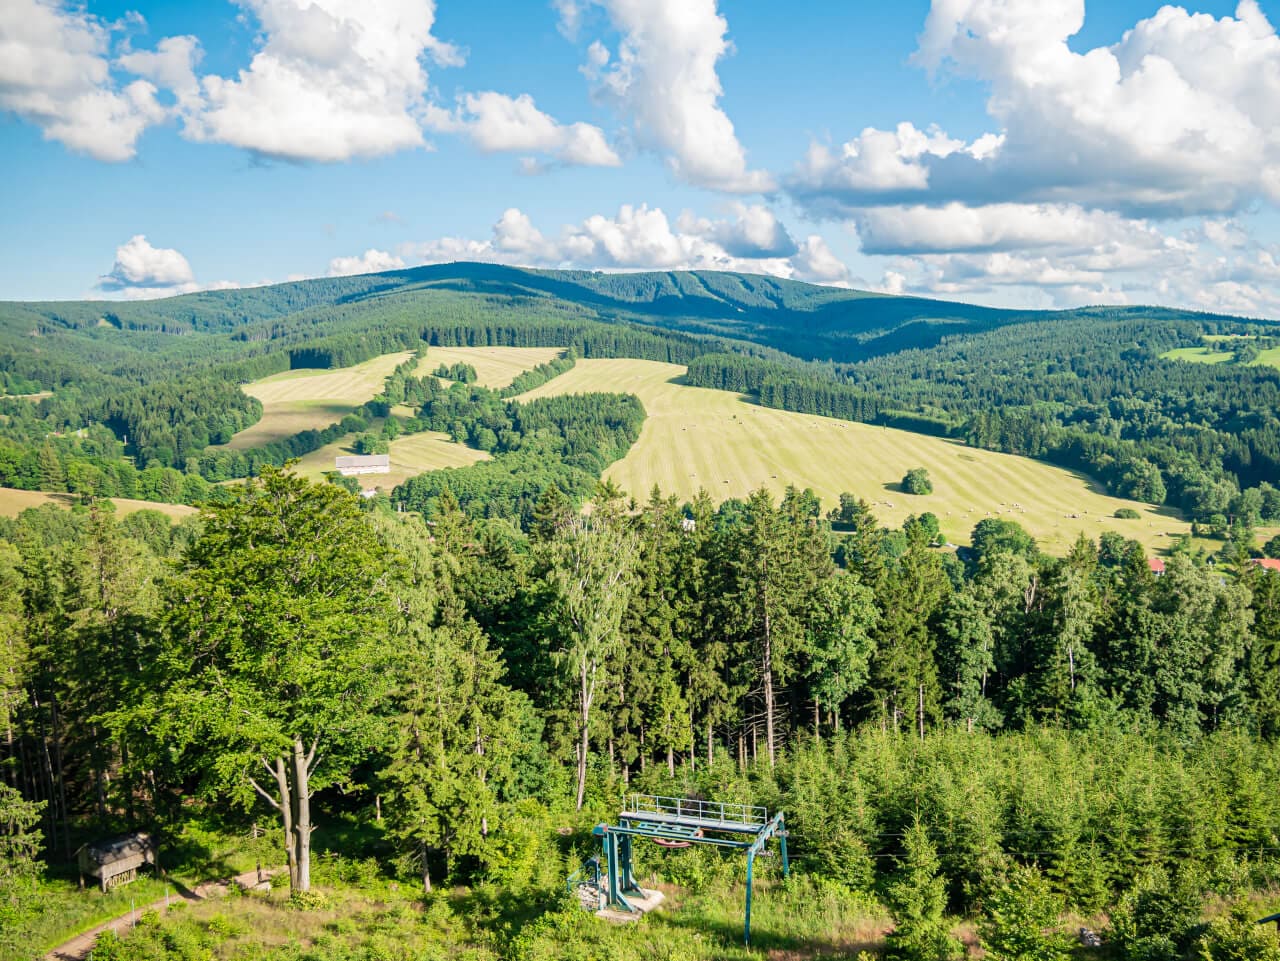 Wieża widokowa Góry Orlickie Góry Bystrzyckie Feistuv kopec ciekawe punkty widokowe w Czechach blisko Polski pogranicze polsko-czeskiej gdzie na wycieczke